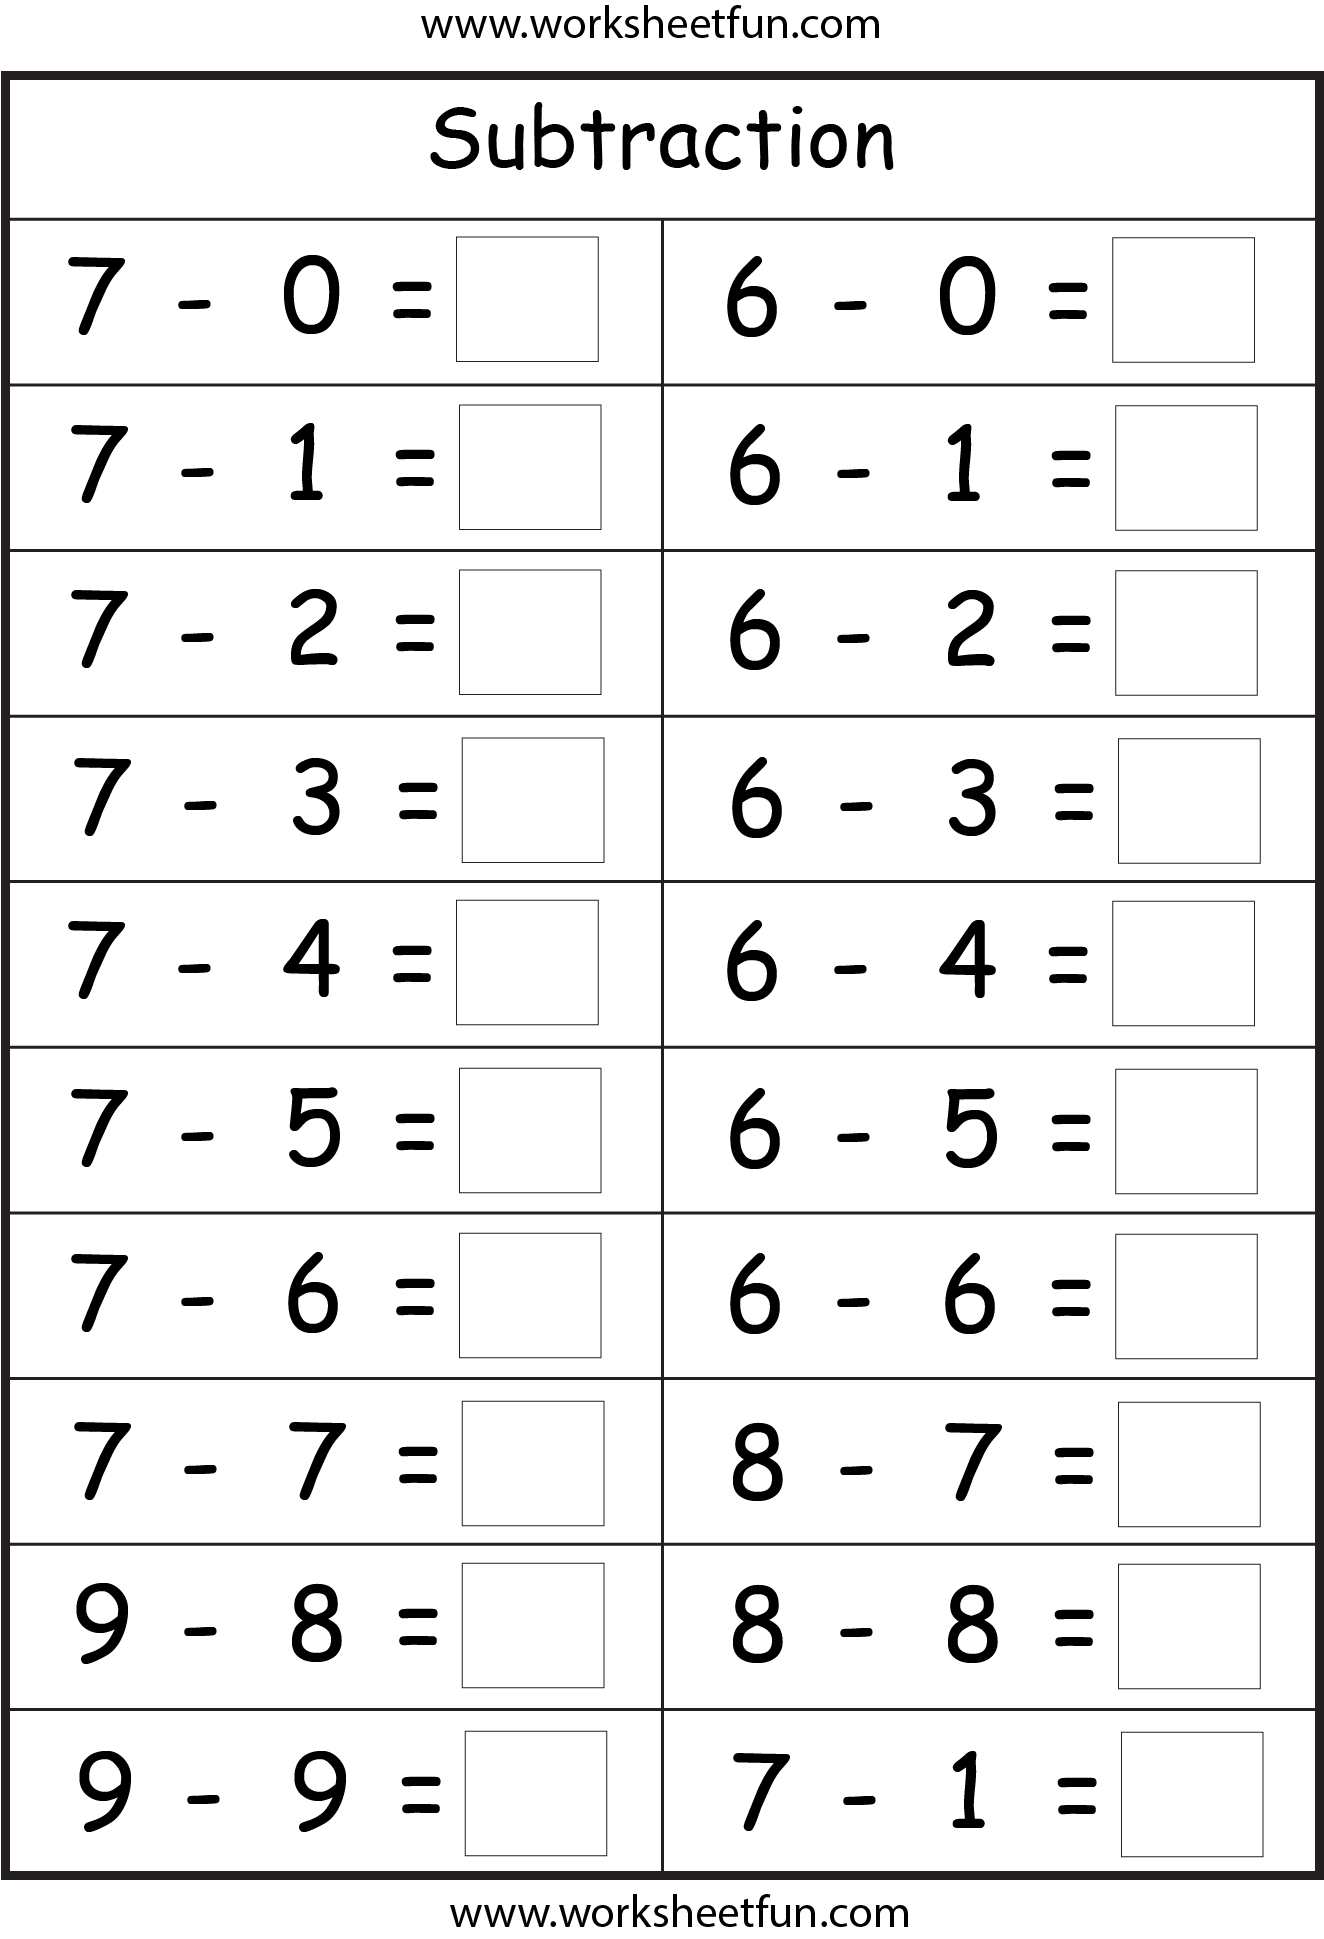 free-printable-math-worksheets-for-kindergarten-subtraction-brazil